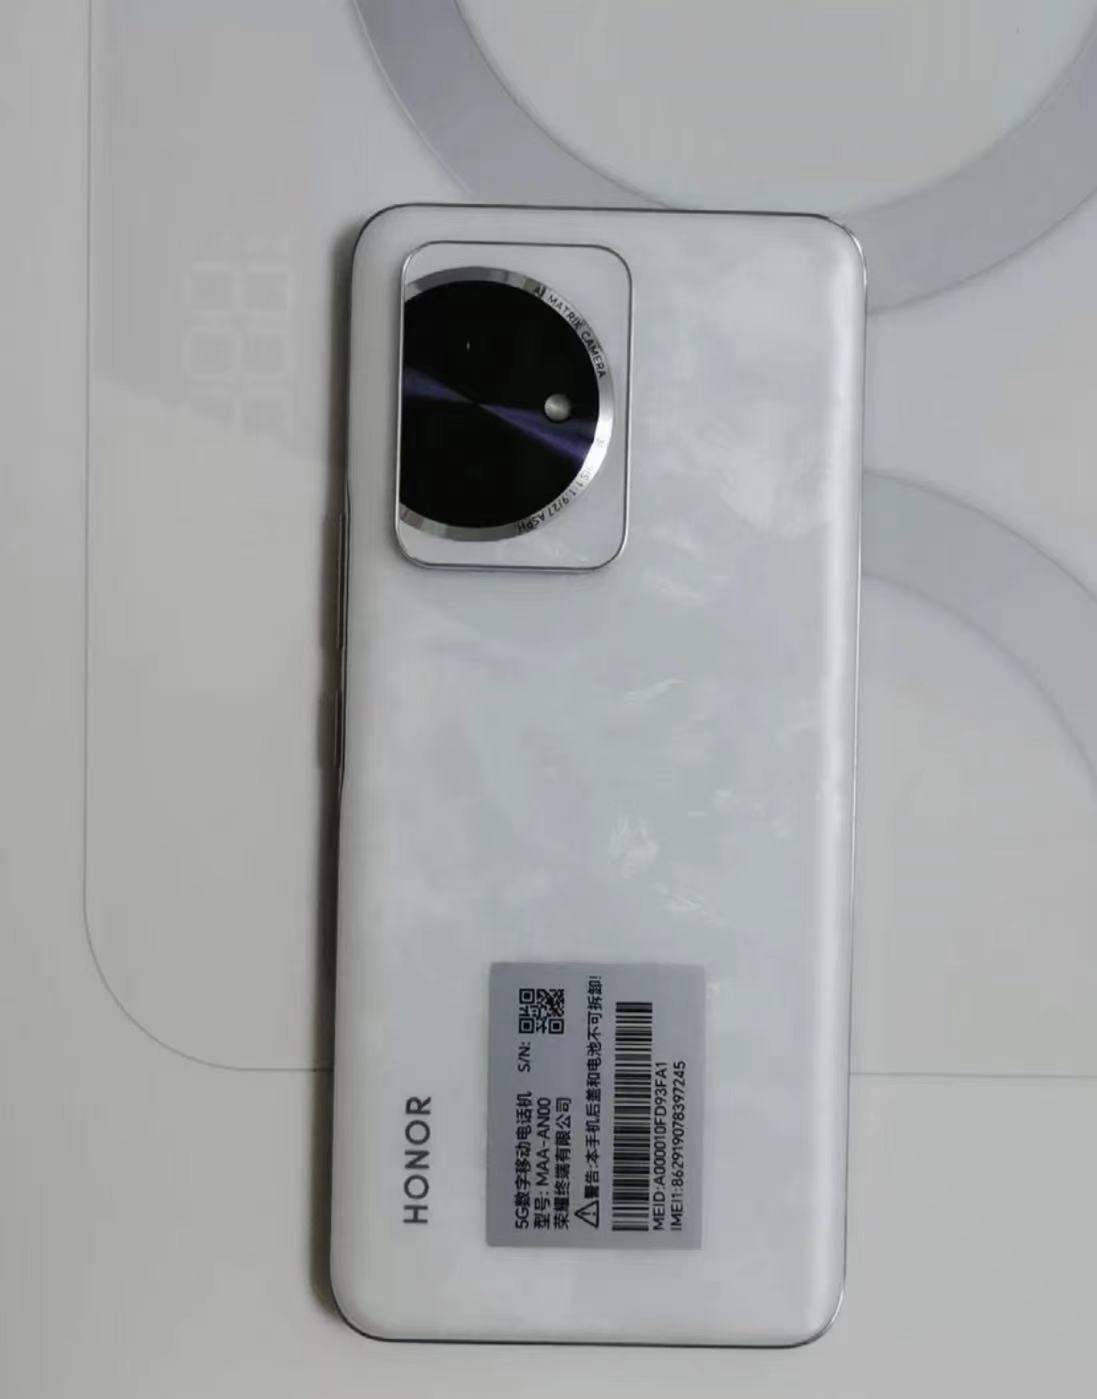 荣耀100 16GB+256GB 月影白 单反级写真相机 绿洲护眼屏 首发第三代骁龙7芯片 100W超级快充 5000mAh高能量密度电池 轻薄四曲设计 5G手机晒单图